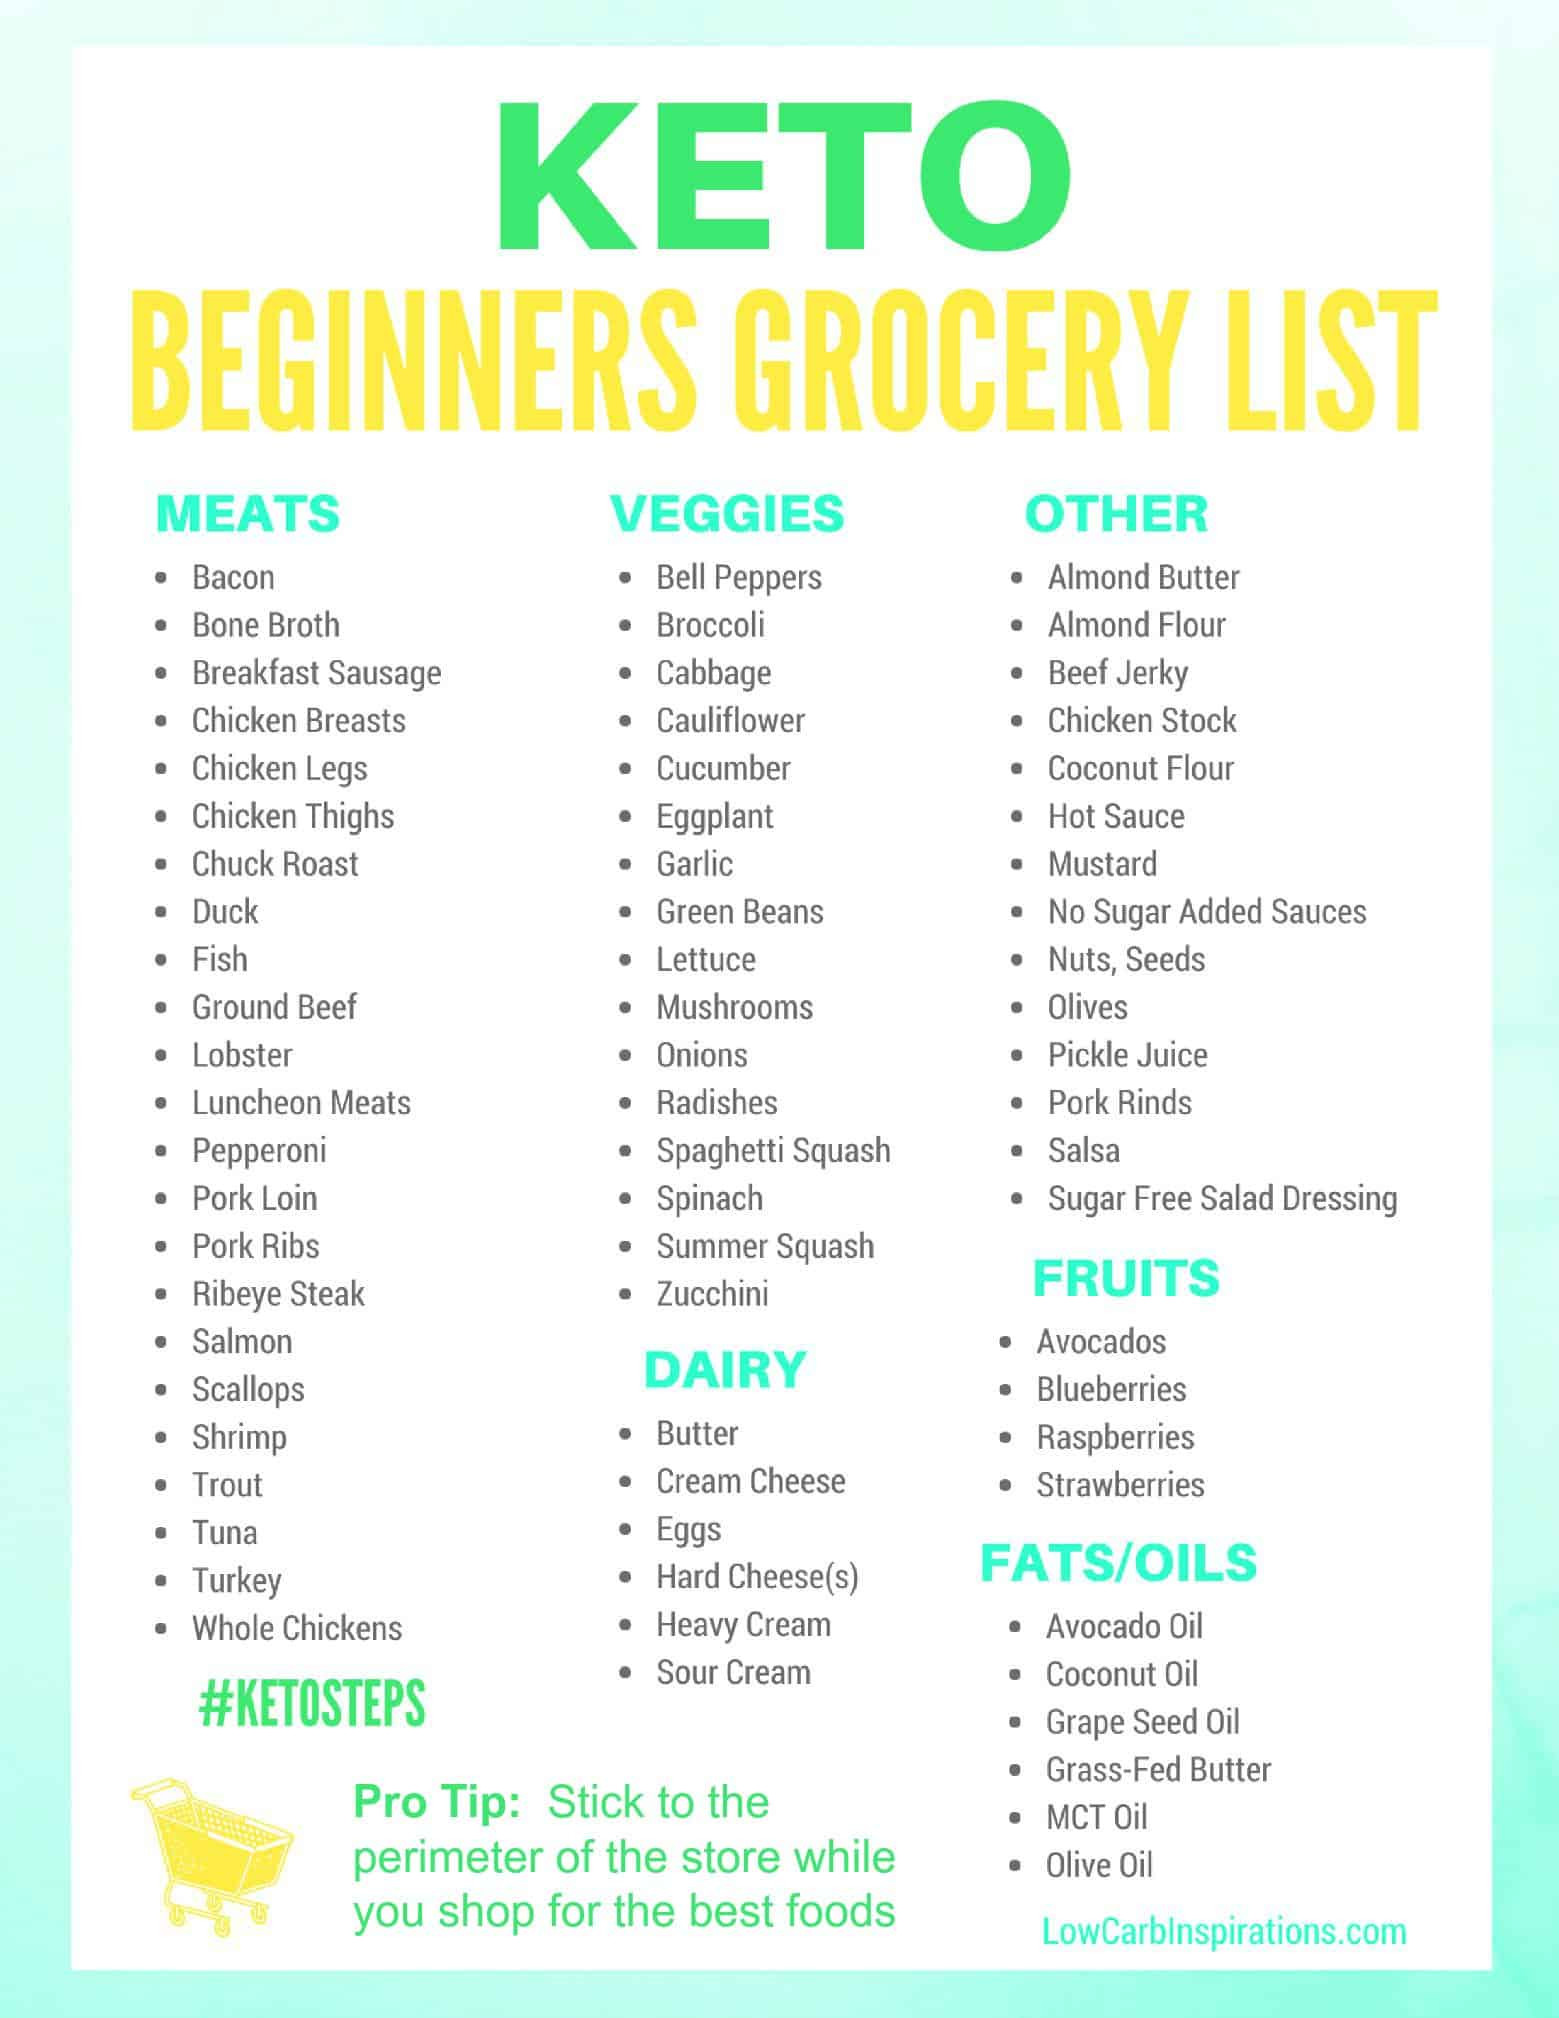 Keto Diet For Beginners How To Start Keto Diet For Beginners
 Keto Grocery List for Beginners iSaveA2Z